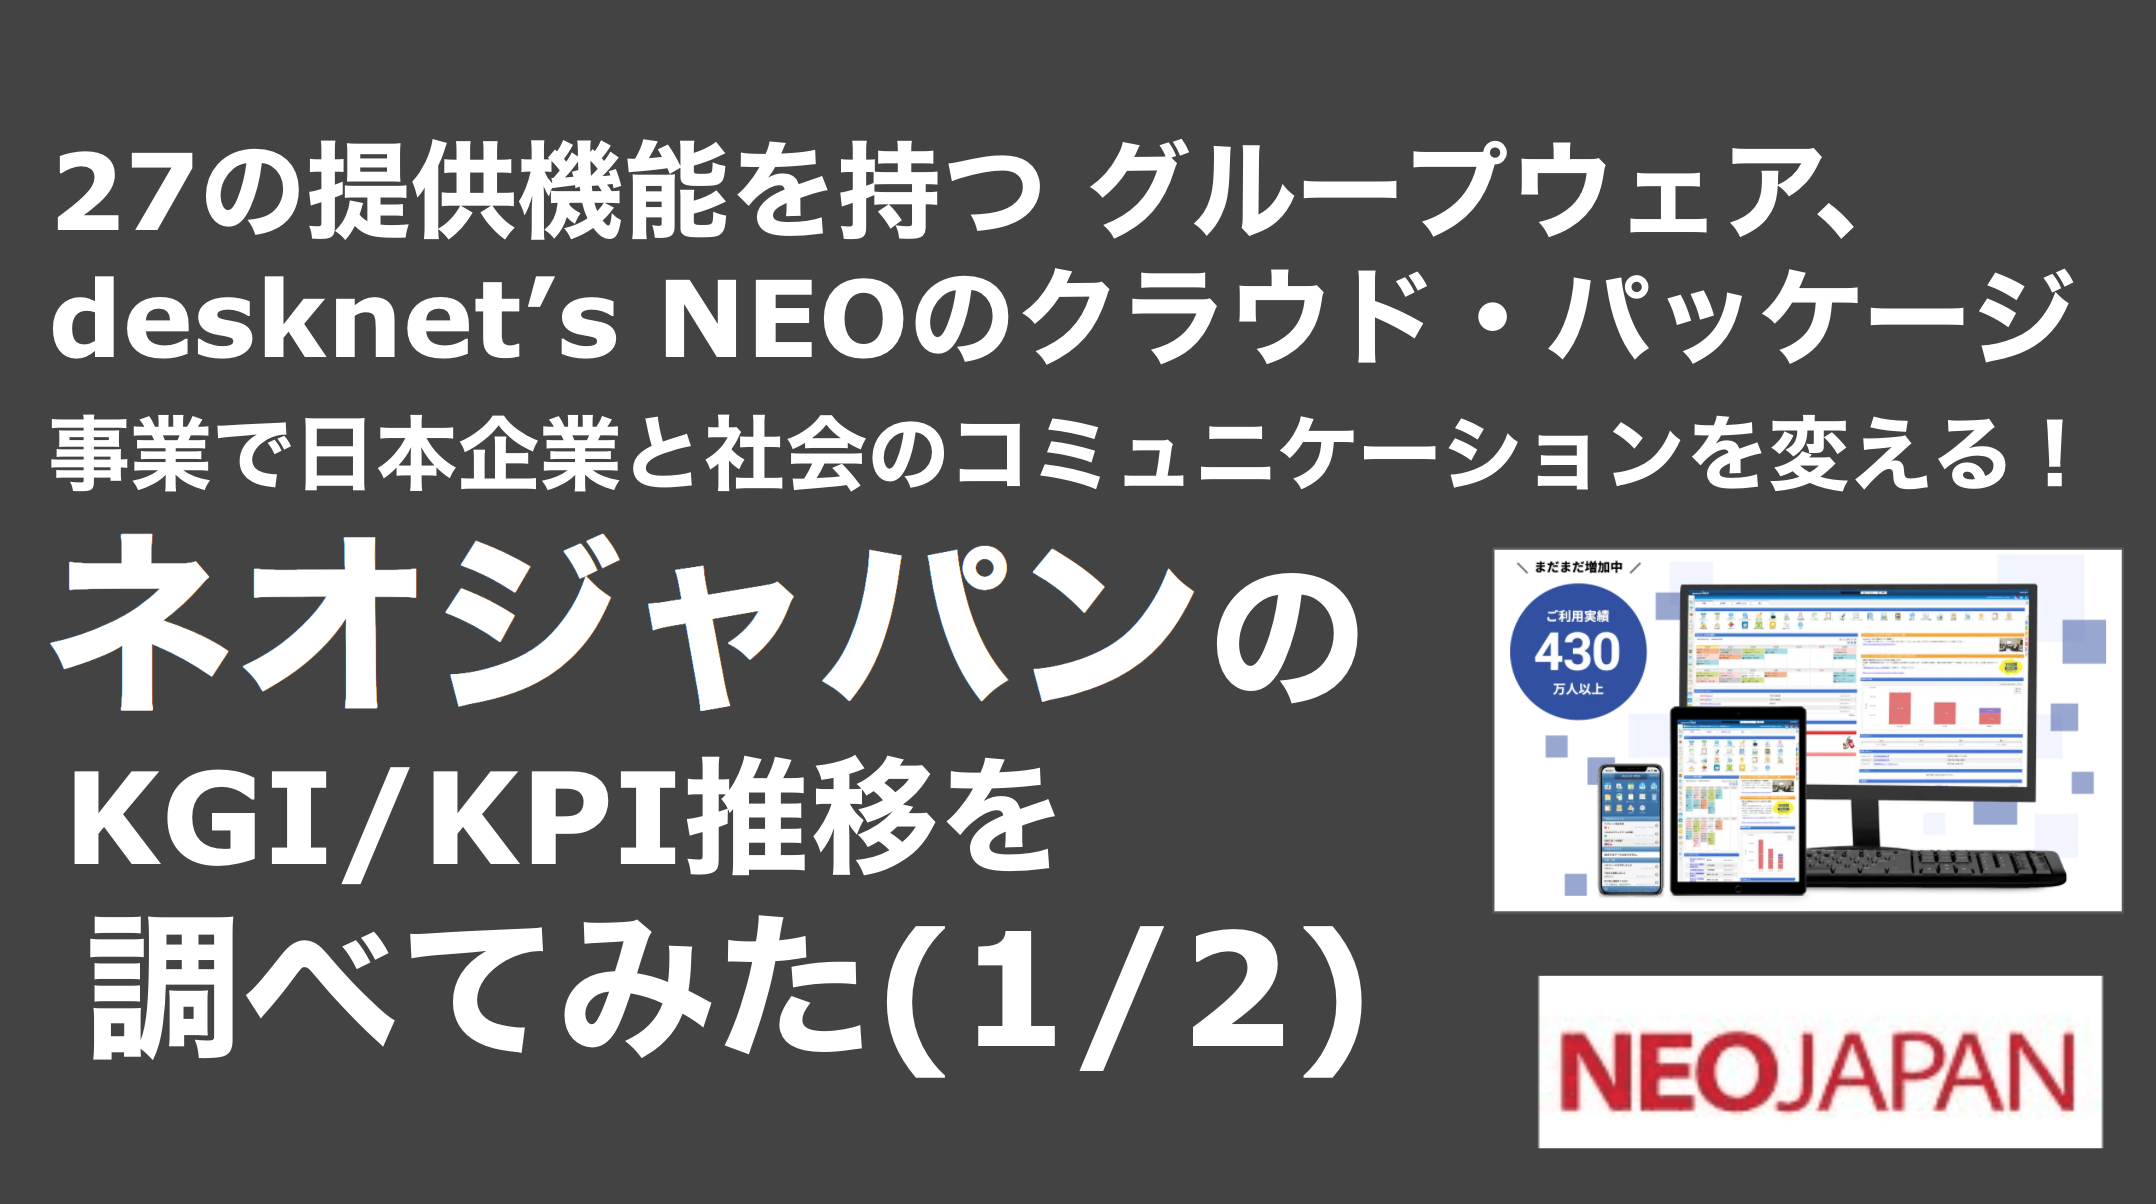 saaslife_27の提供機能を持つ グループウェア、desknet’s NEOのクラウド・パッケージ事業で日本企業と社会のコミュニケーションを変える！ネオジャパンのKGI/KPI推移を調べてみた(1/2)